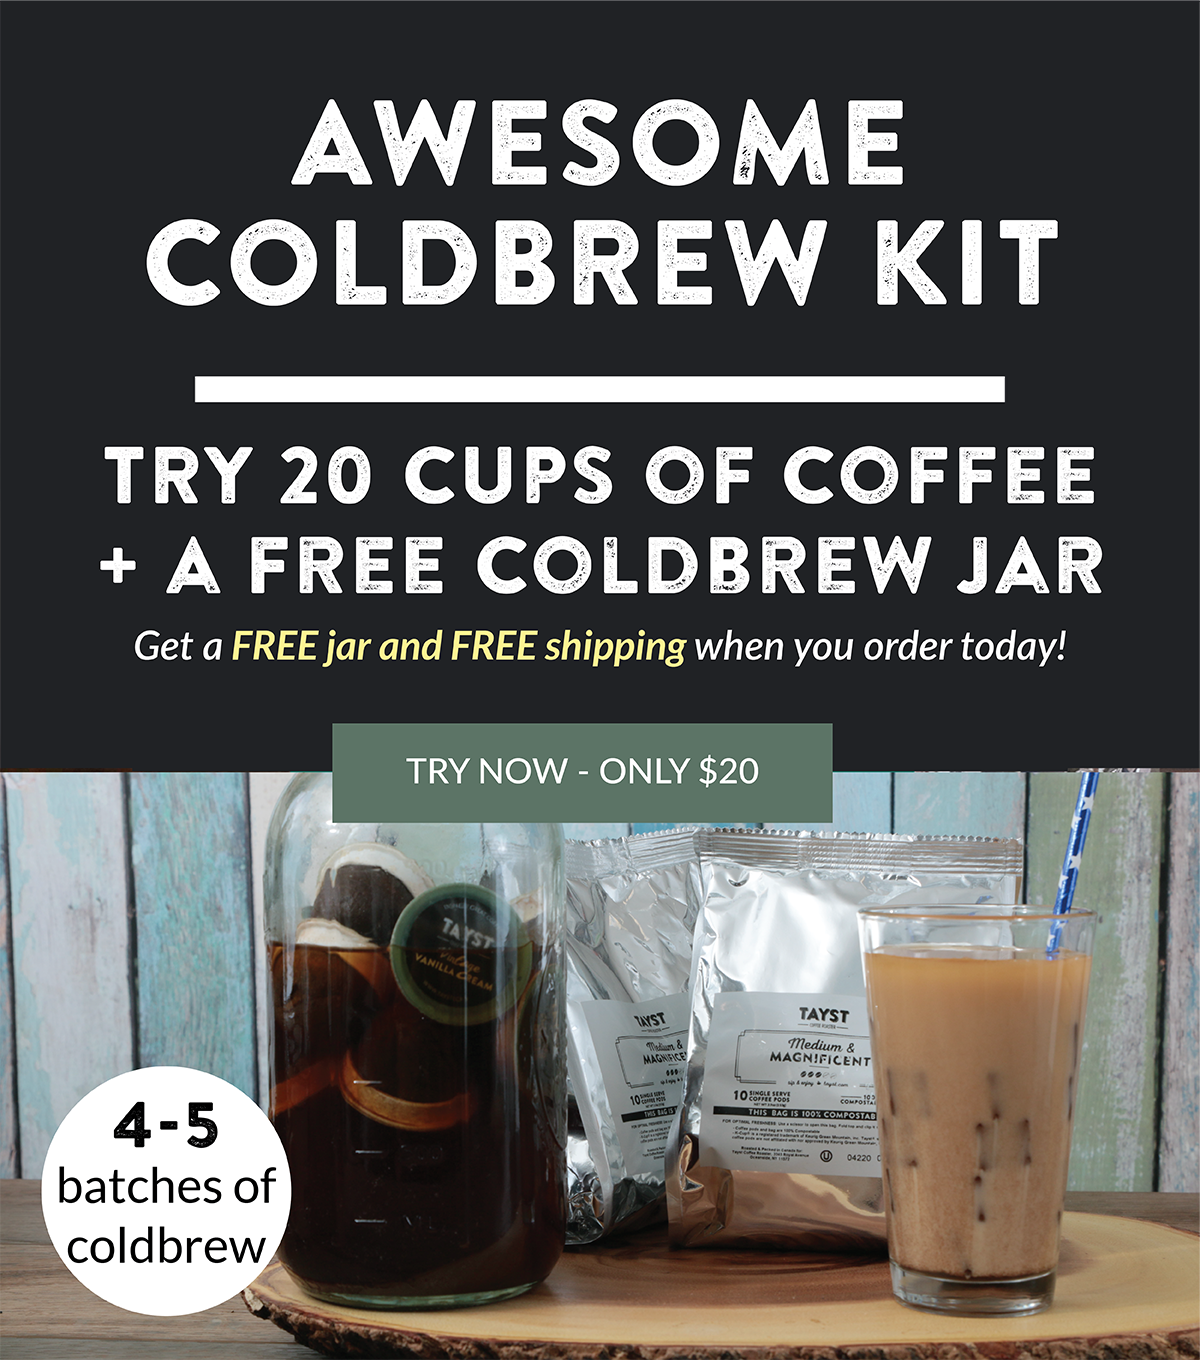 Cold Brew Kit